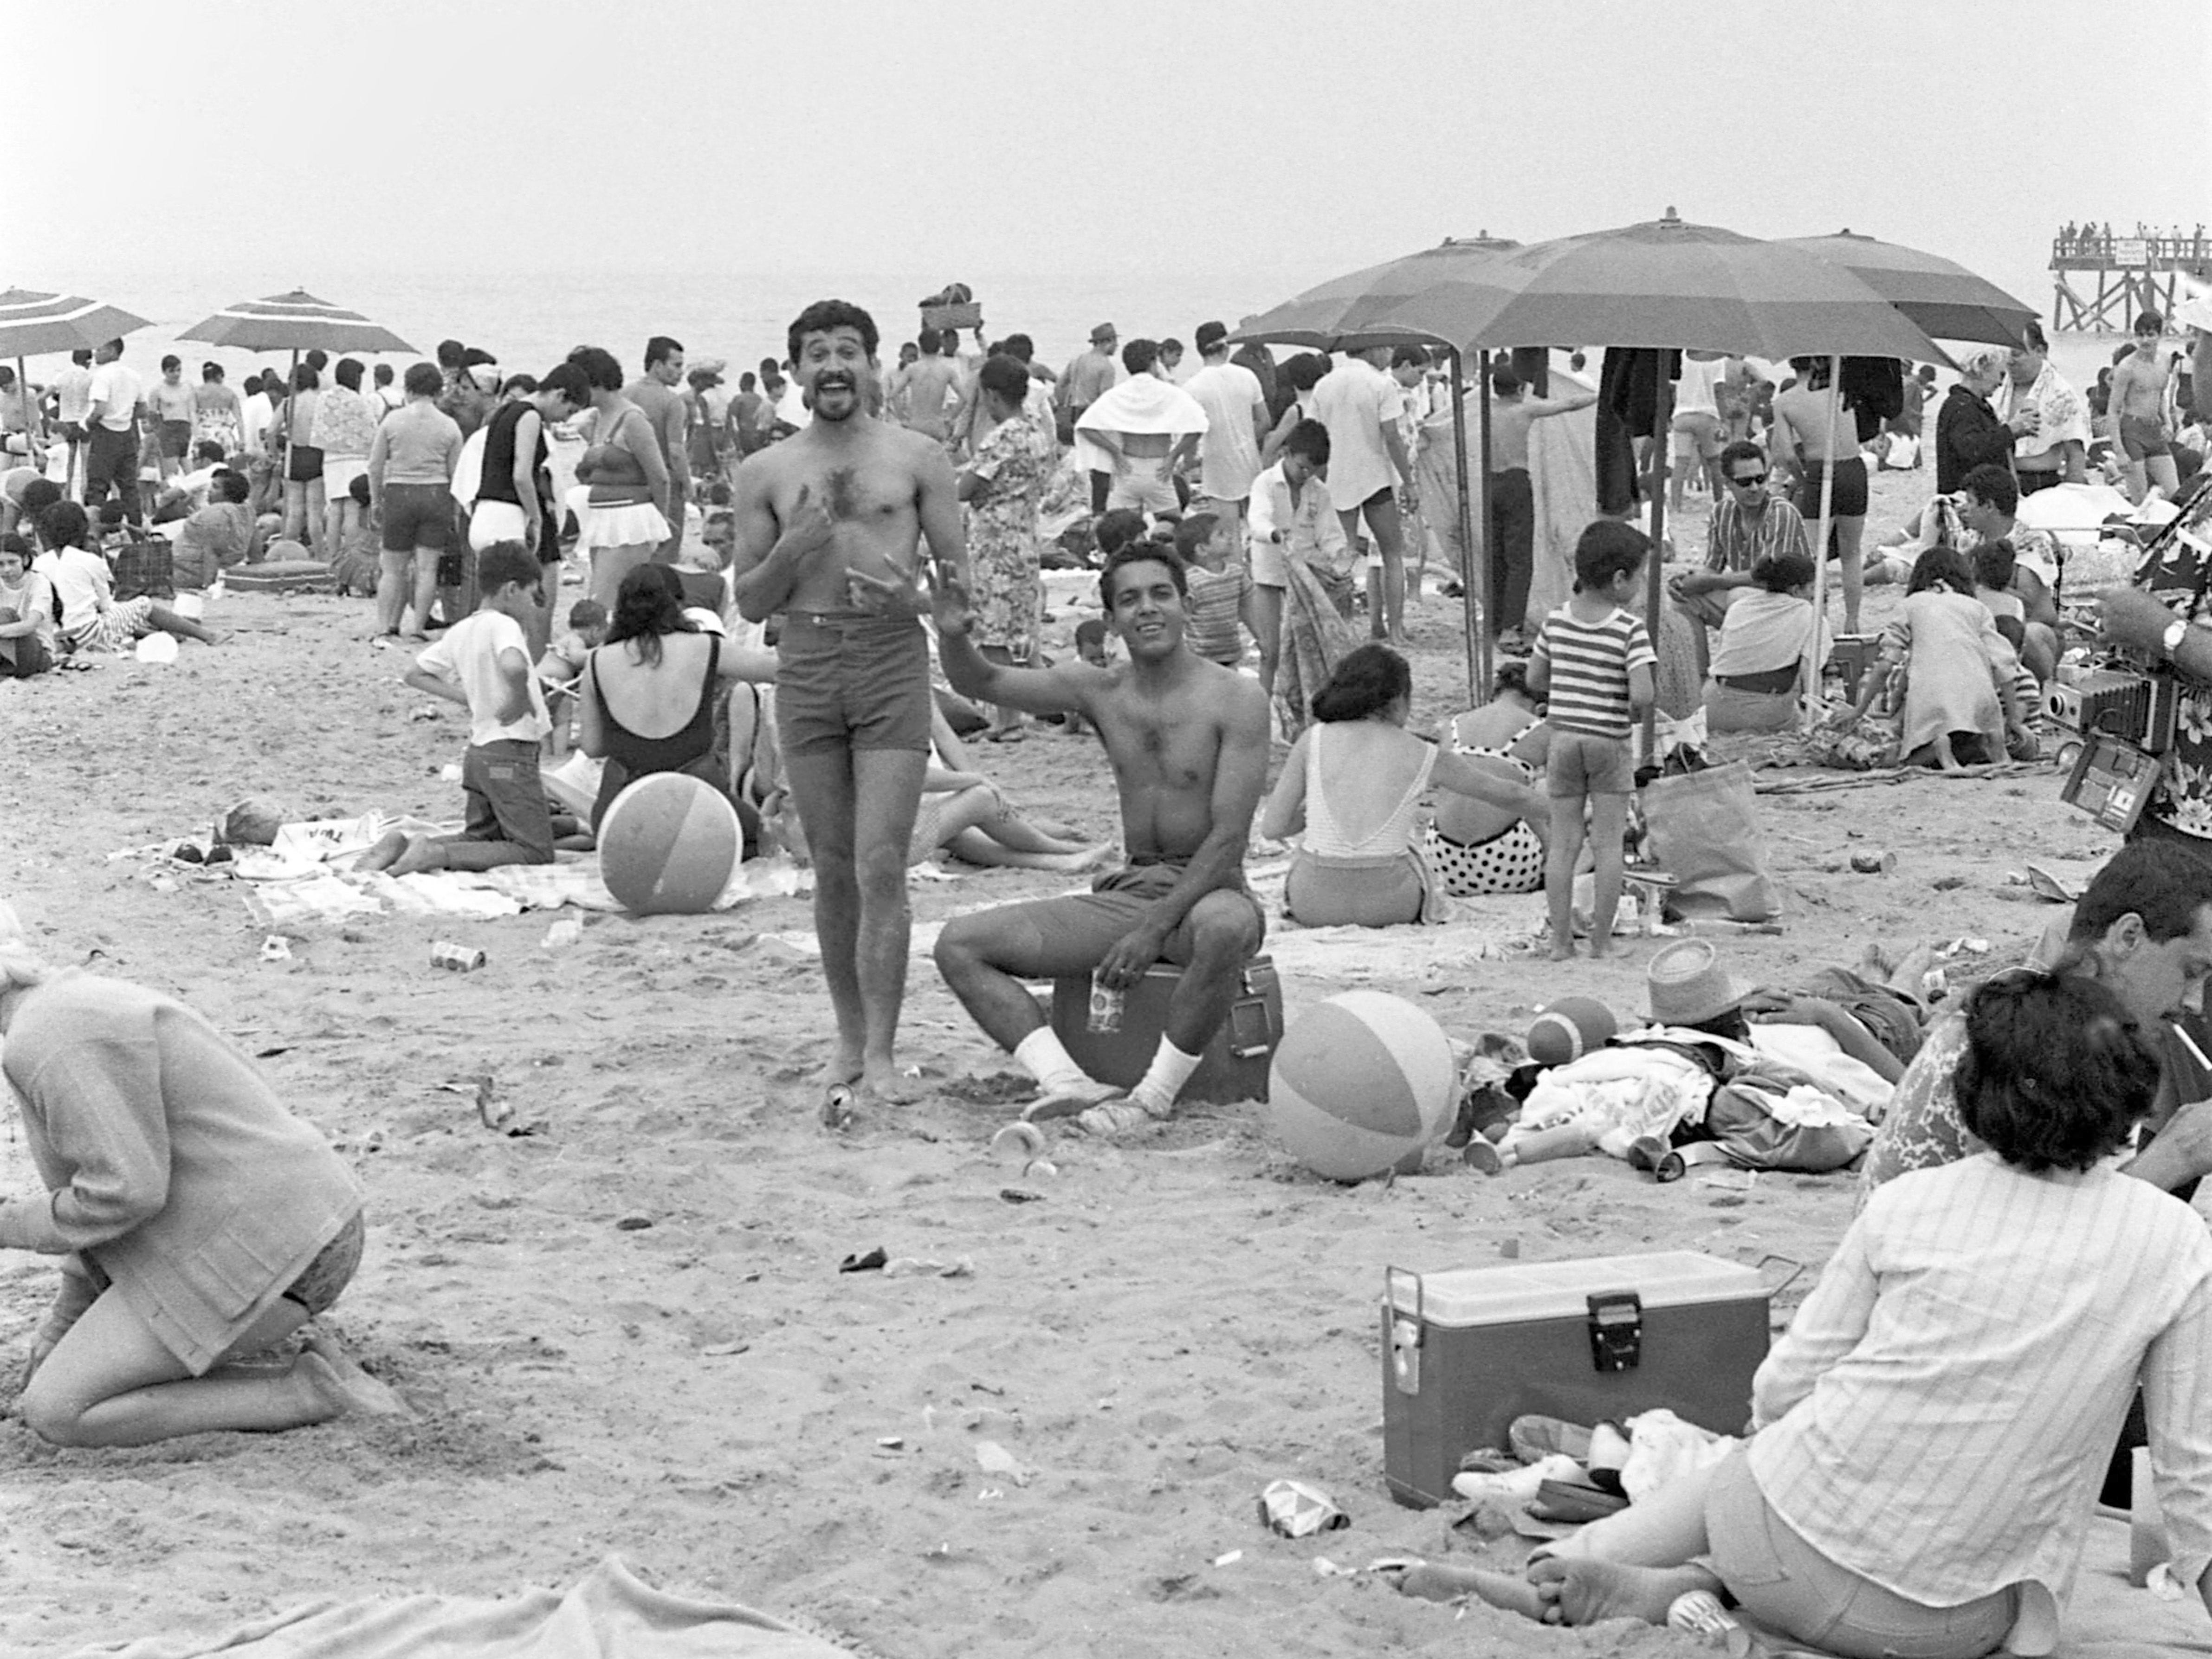 Am 4. Juli 1968 posieren zwei unbekannte Männer in kurzen Hosen am überfüllten Strand von Coney Island vor der Kamera